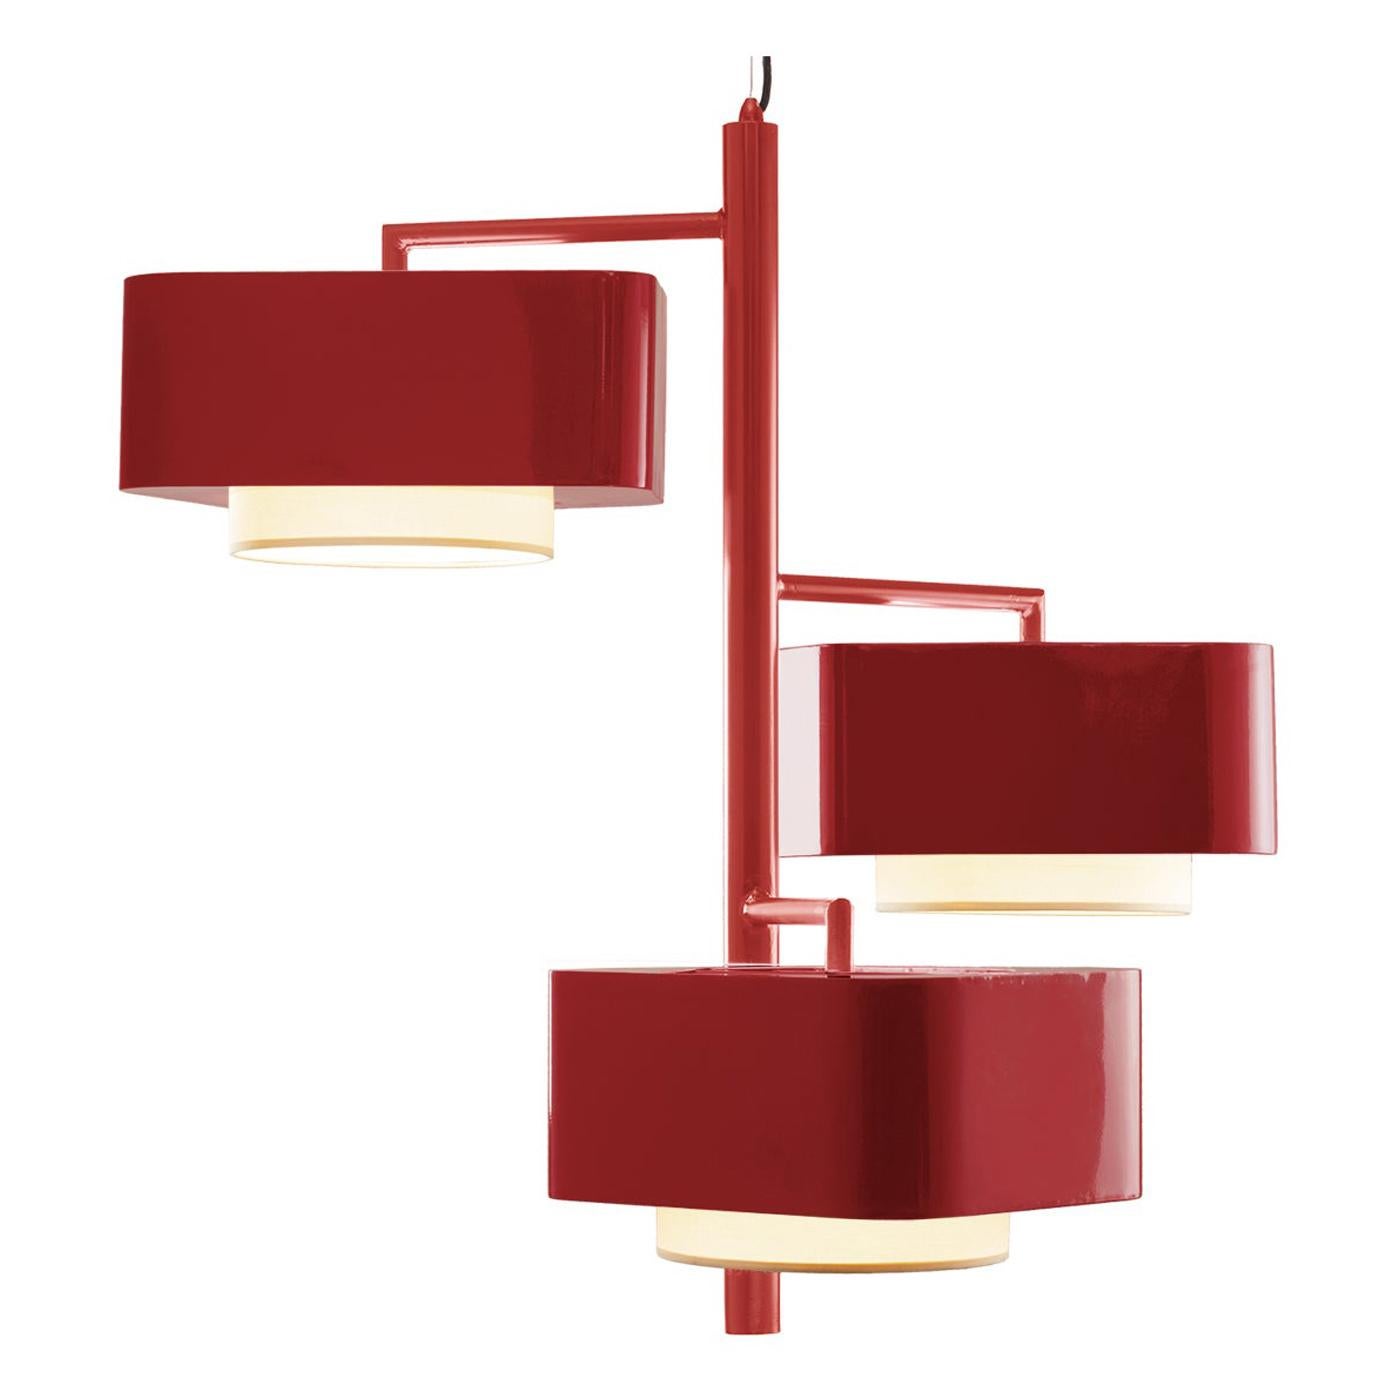 Lampe à suspension Carousel I d'inspiration Art Déco contemporaine rouge lipstick